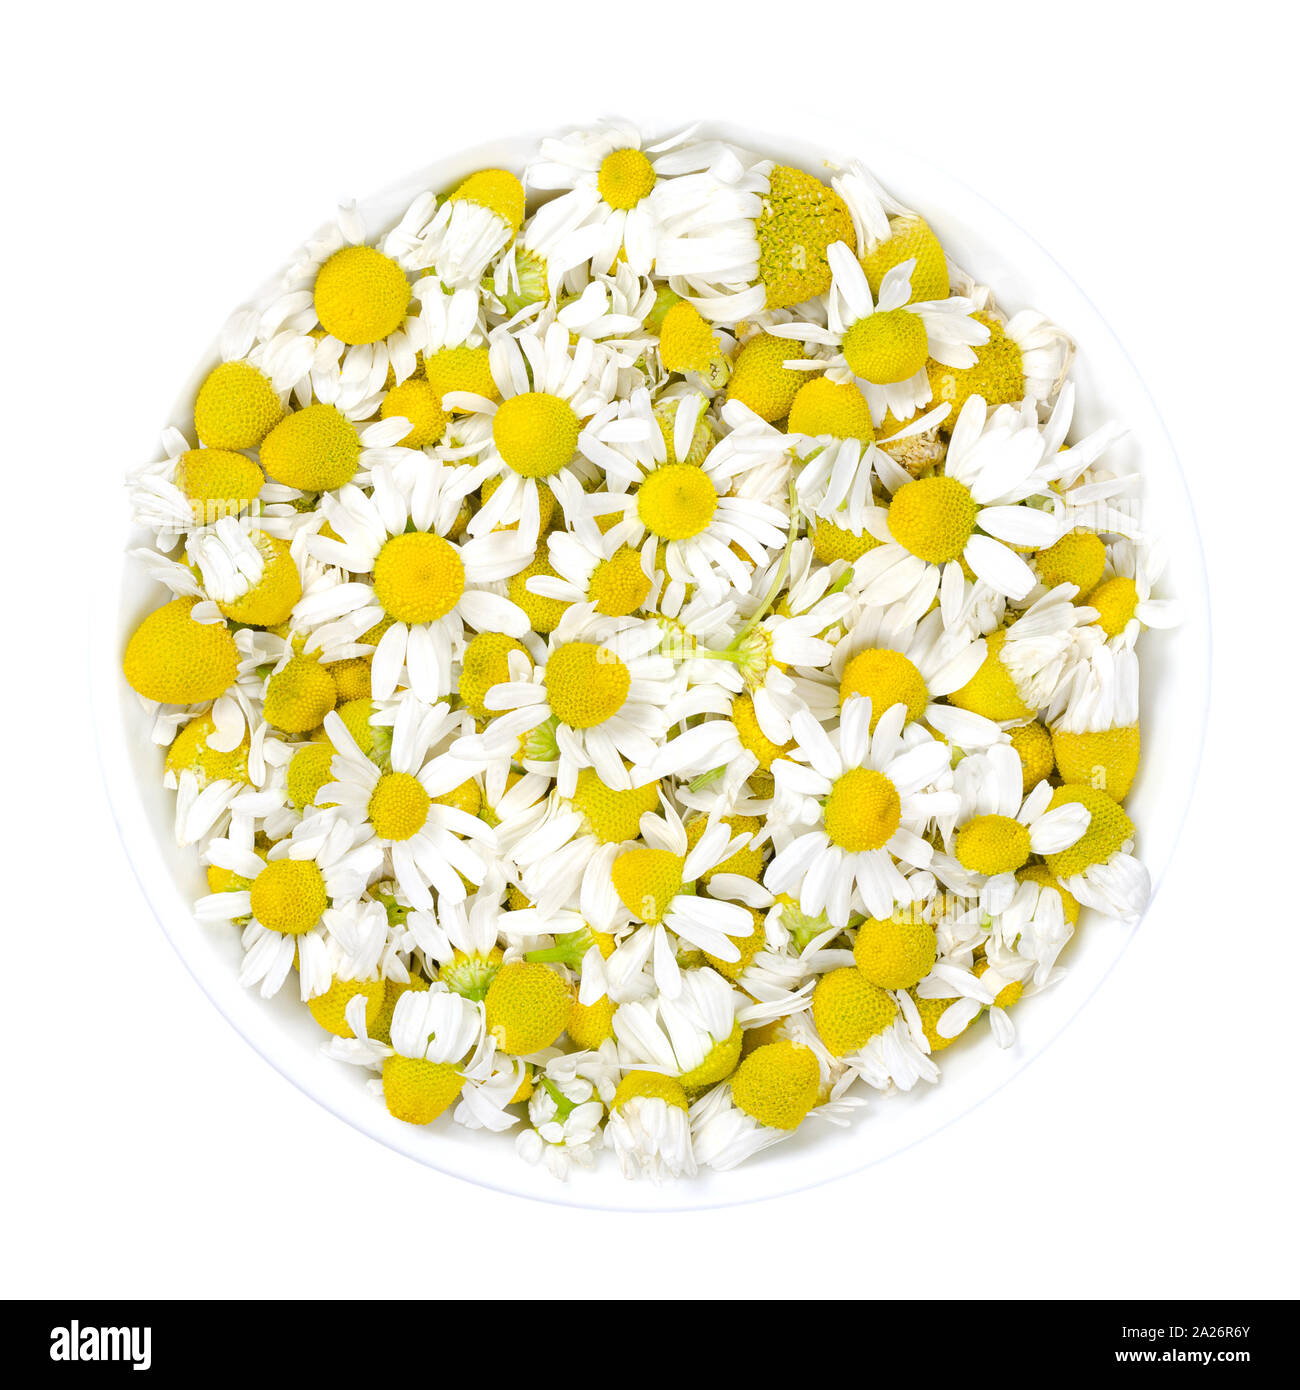 Kamille Blüten in weiß Schüssel. Frische Blumen, Kamille Matricaria Chamomilla, für Kräutertees und in der traditionellen Medizin verwendet. Stockfoto